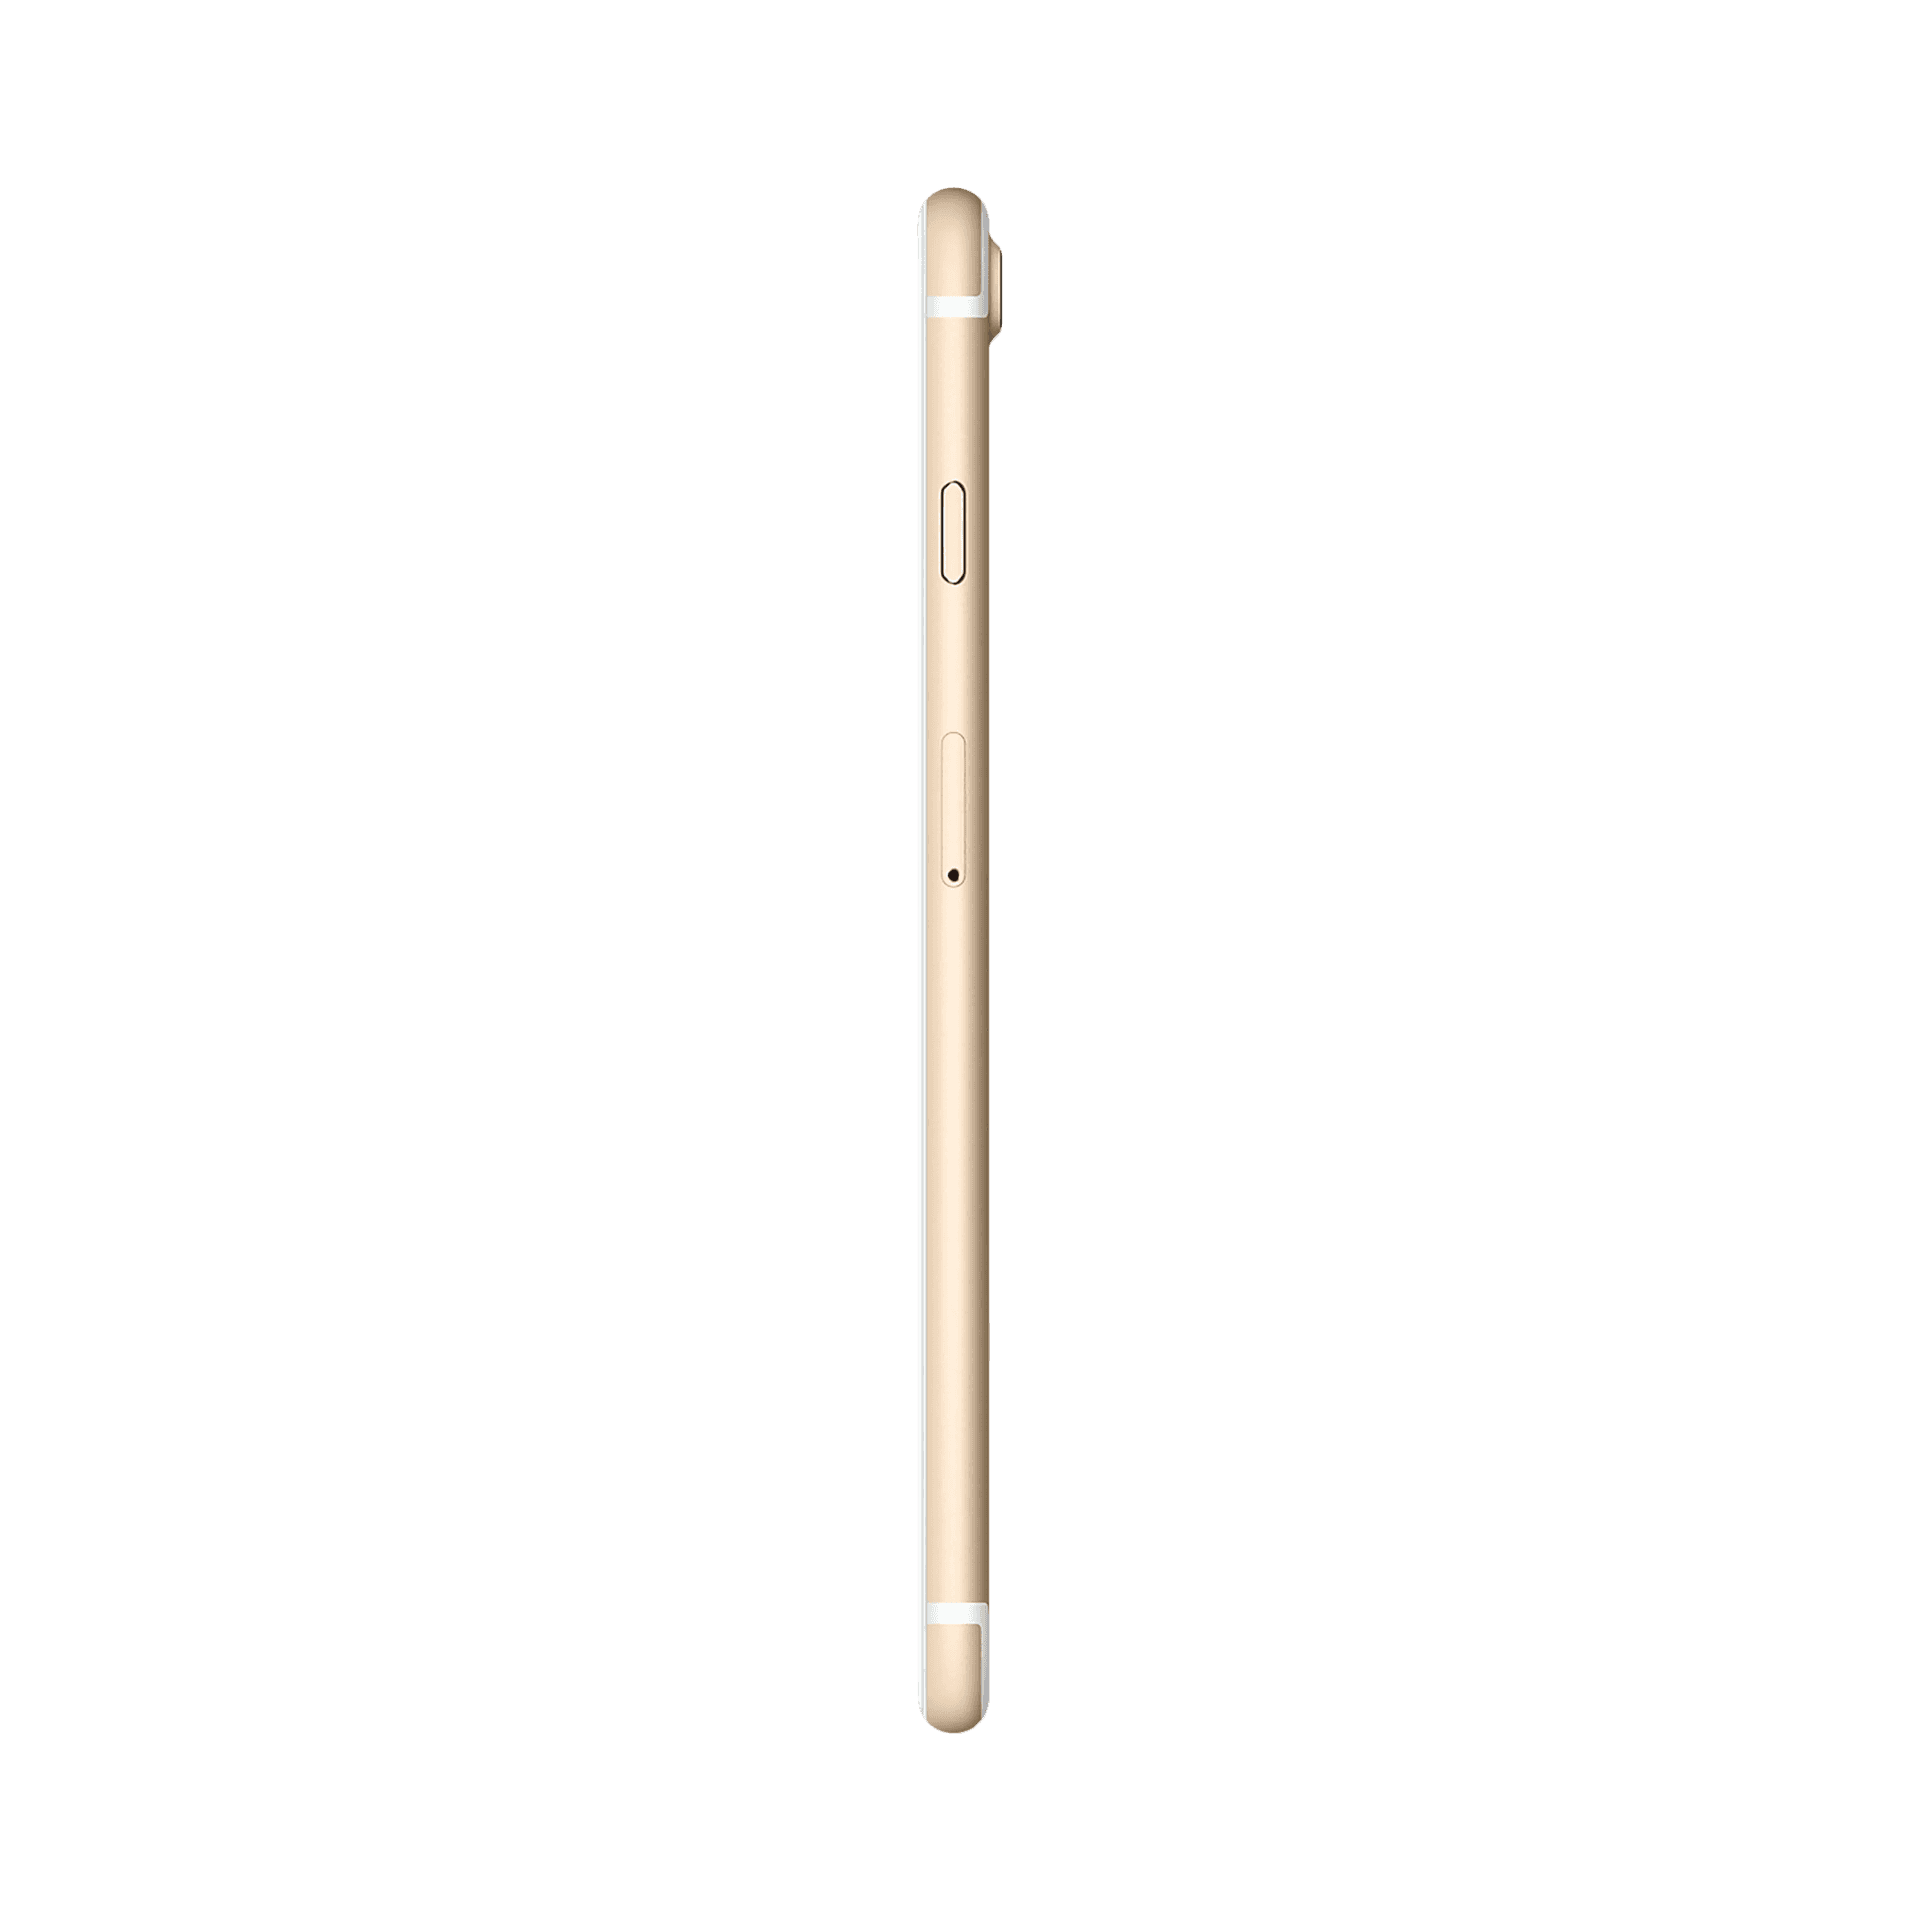 Apple iPhone 7 Plus - 32 GB - Altın